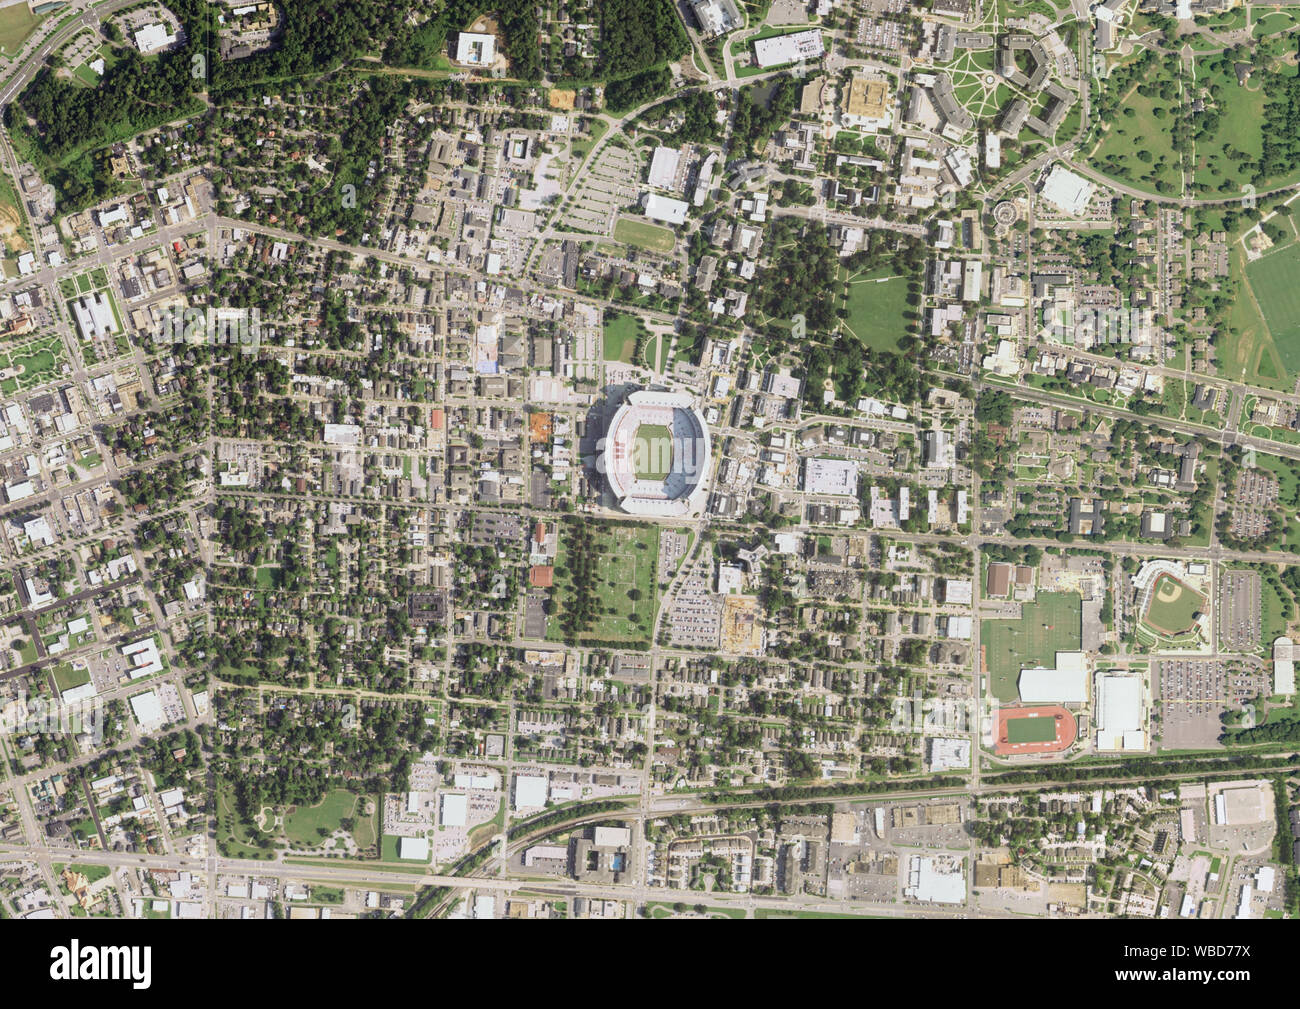 Luftaufnahmen von: Bryant-Denny Stadium, Tuscaloosa, Alabama, USA. Bild am 24. August 2017 erhoben. Stockfoto